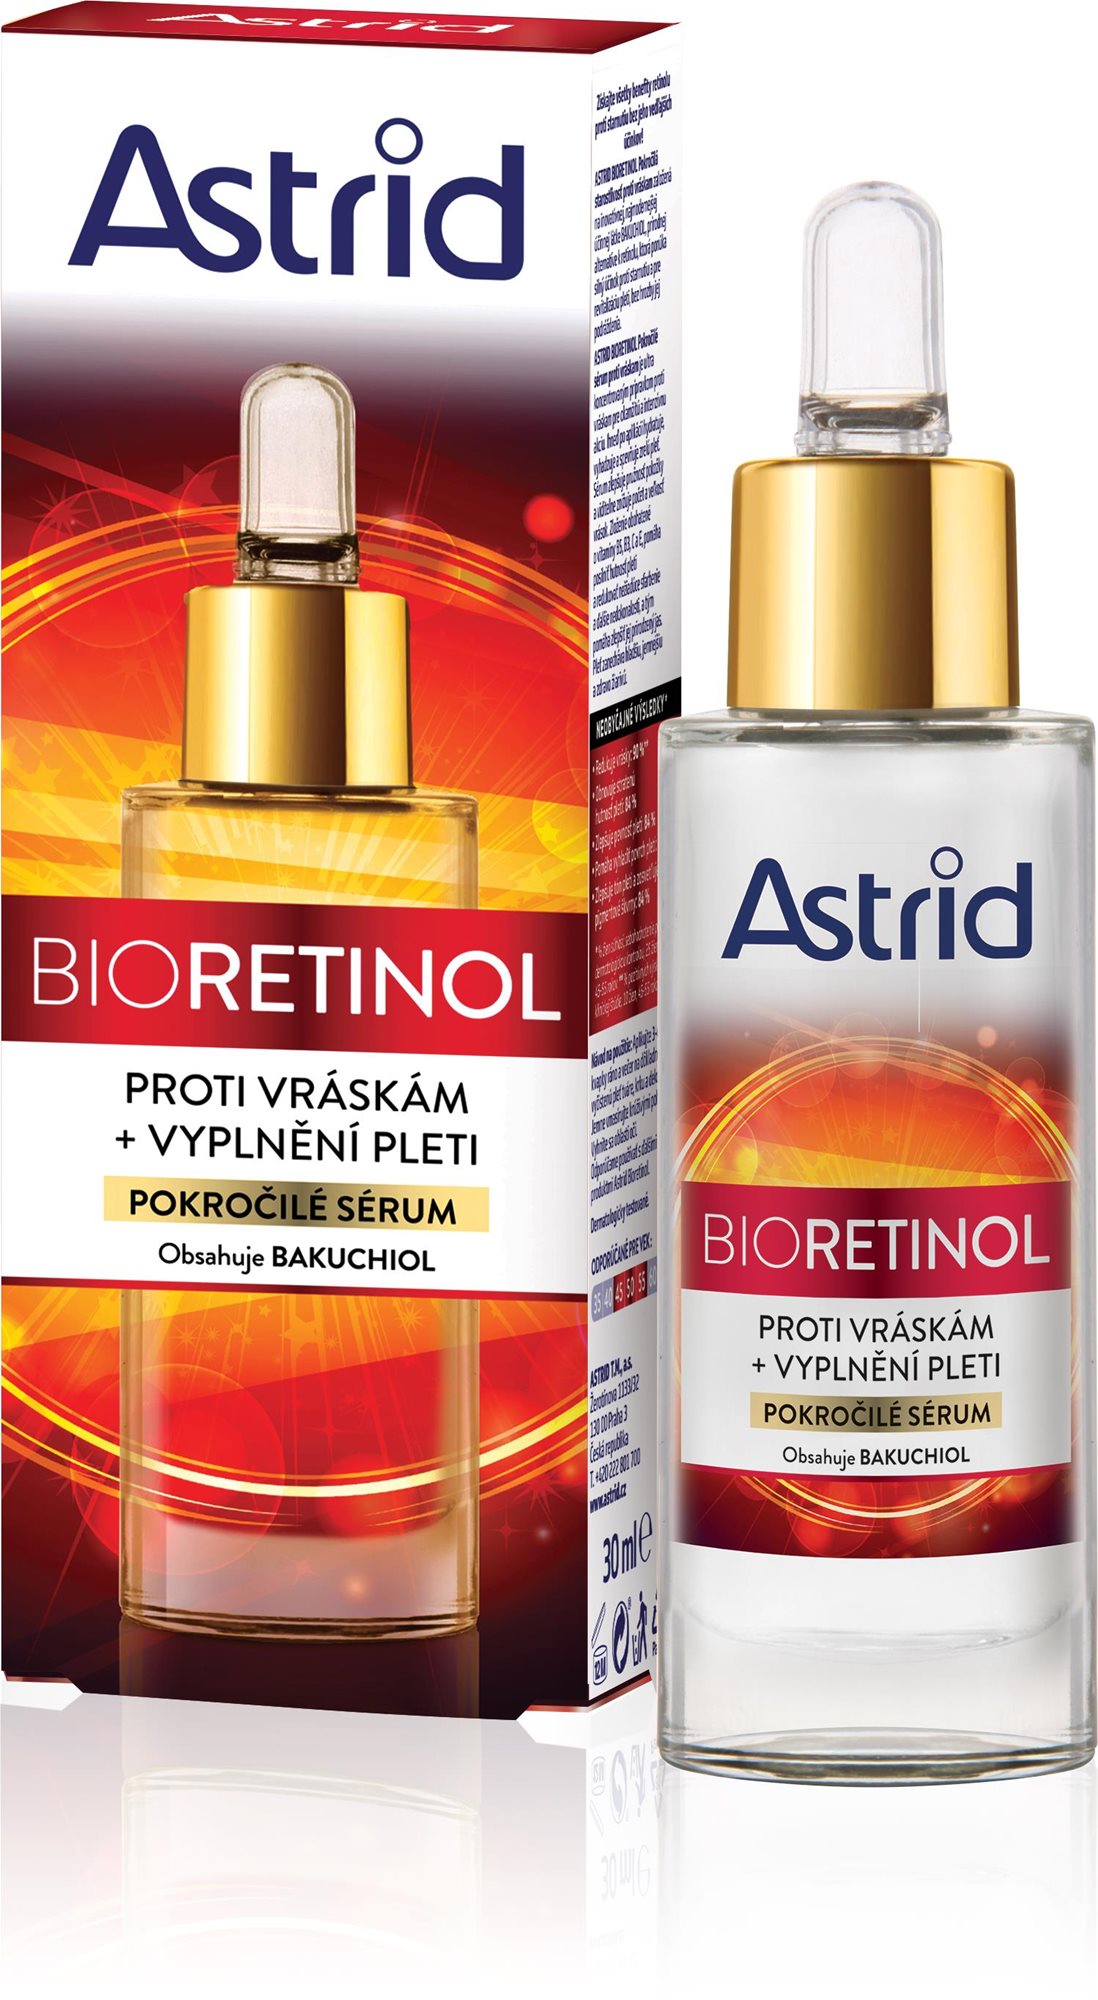 ASTRID Bioretinol Fejlett ránctalanító szérum 30 ml